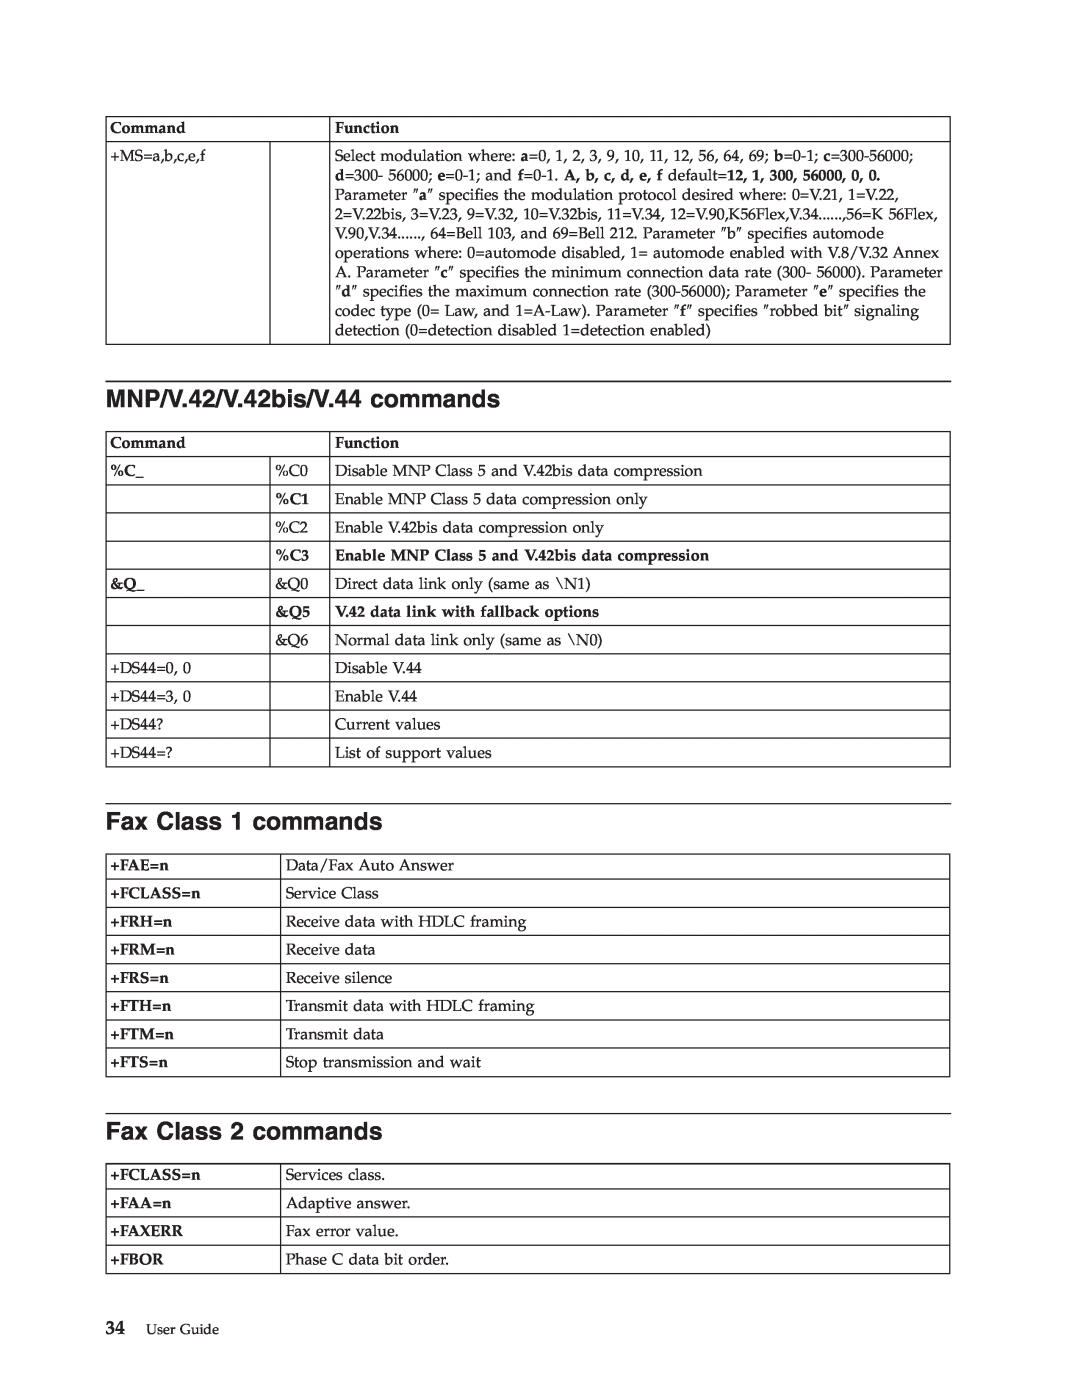 IBM 6824, 2289 manual MNP/V.42/V.42bis/V.44 commands, Fax Class 1 commands, Fax Class 2 commands, User Guide 